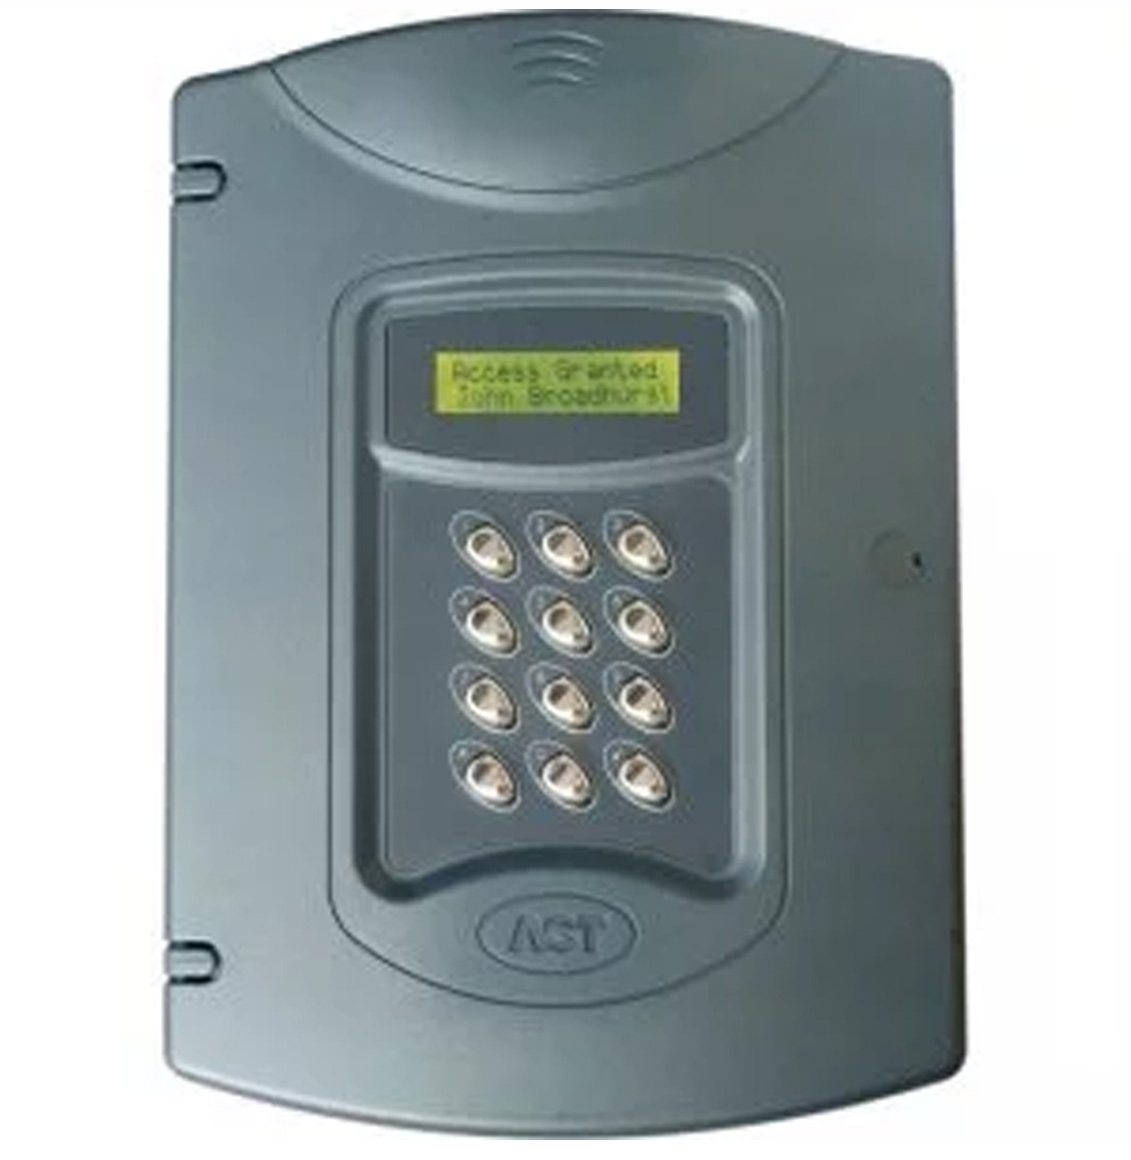 ACT Pro 4000 2 Door Controller